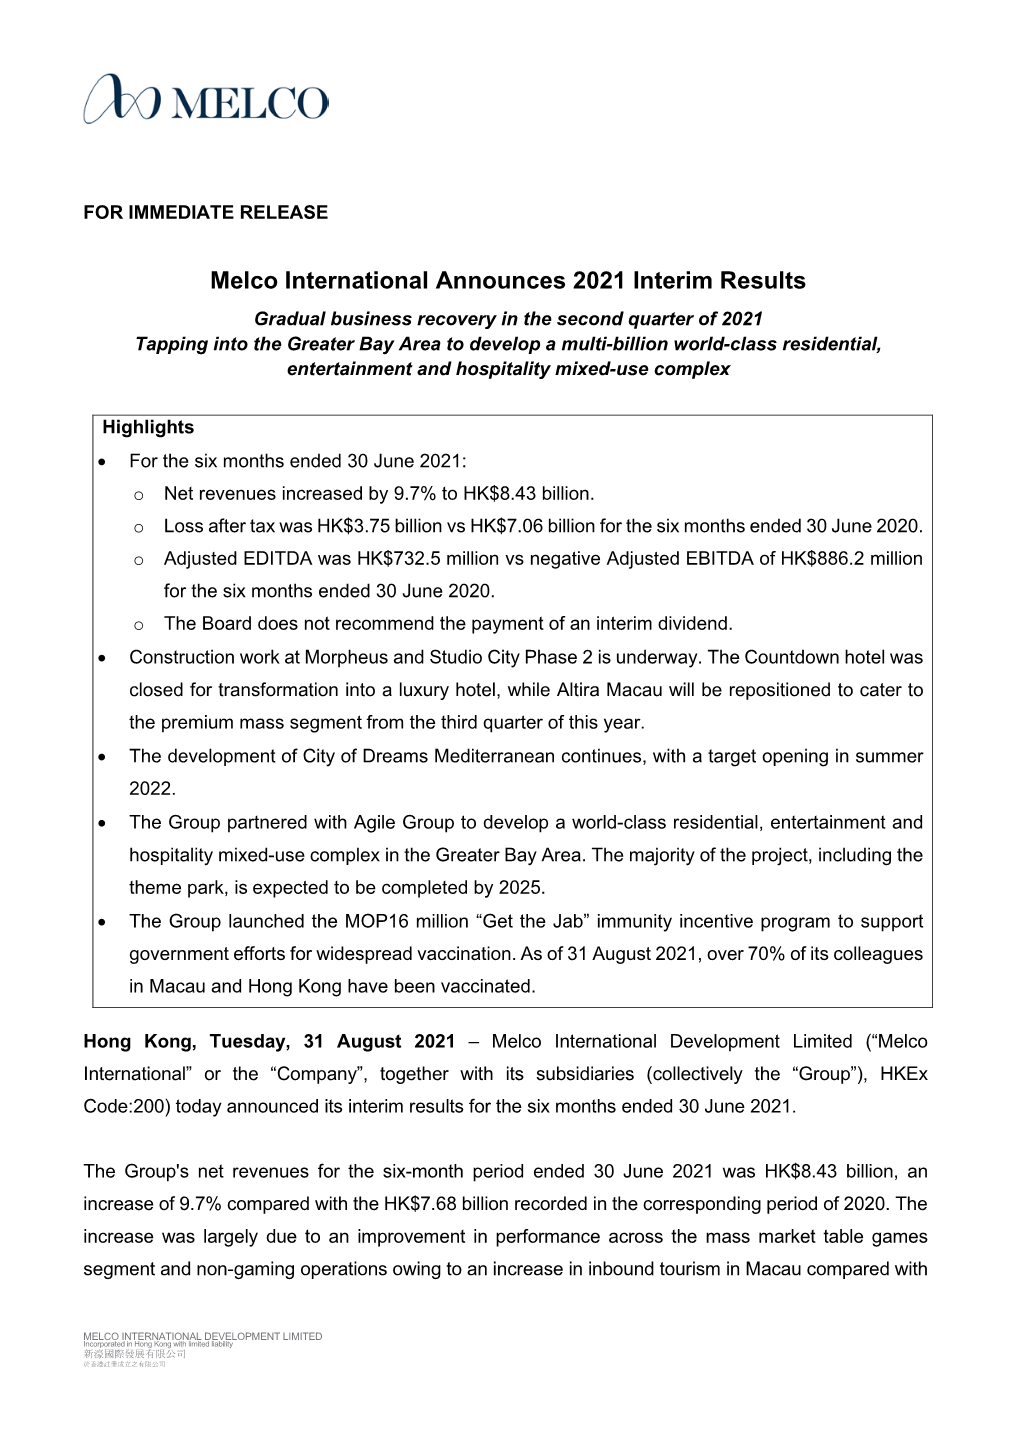 Melco International Announces 2021 Interim Results